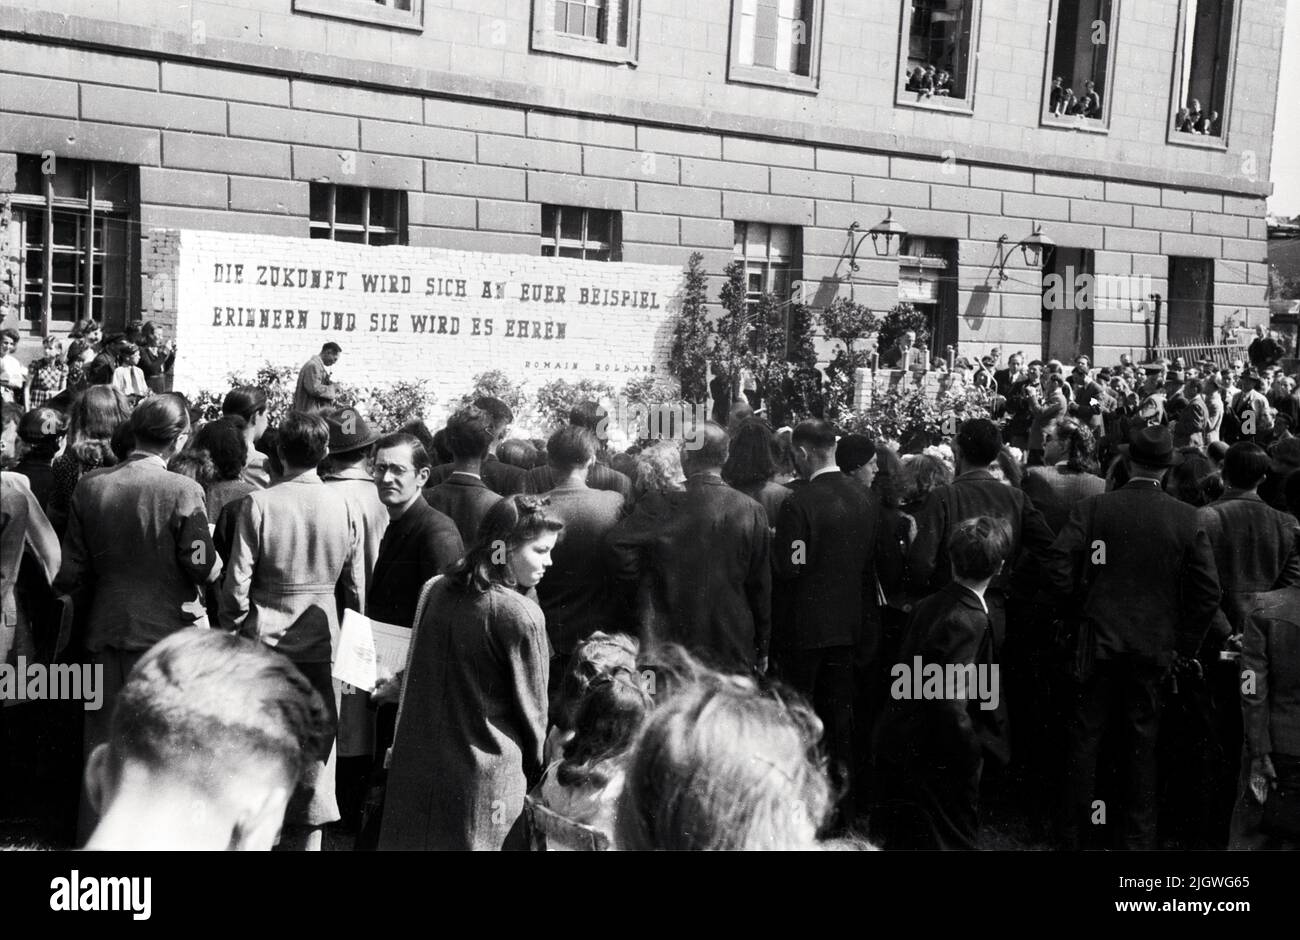 Menschenmenge auf einer Kundgebung zum Tag des freien Buches vor der Humboldt-Universität in Berlin, Deutschland 1947 - Zitat: Romain Rolland: Die Zukunft wird sich an euer Beispiel erinnern und sie wird es ehren Foto Stock